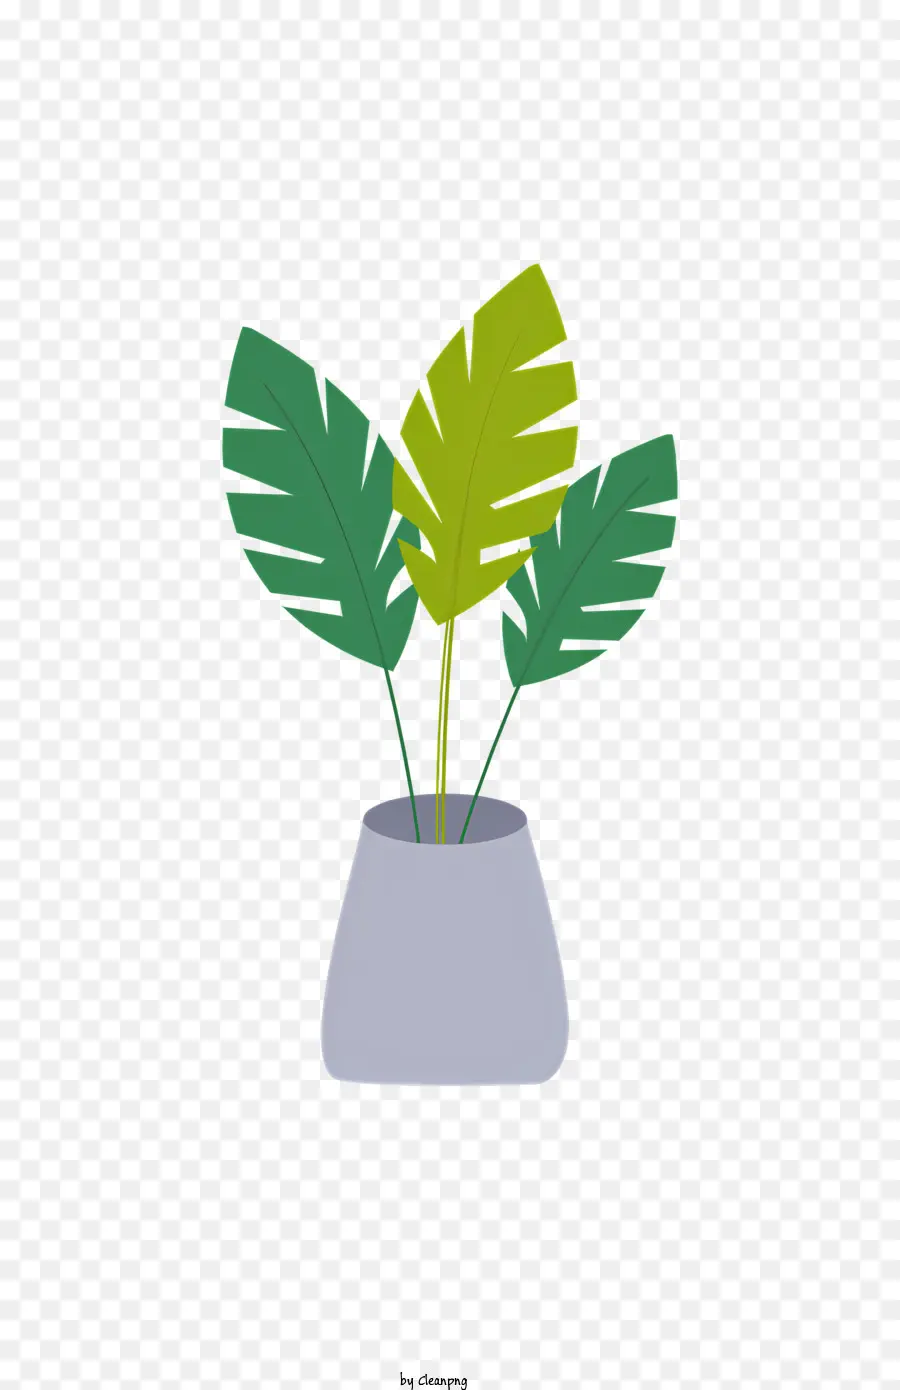 eyeball plant in pot green leaves vase-shaped plant rounded bottom pot